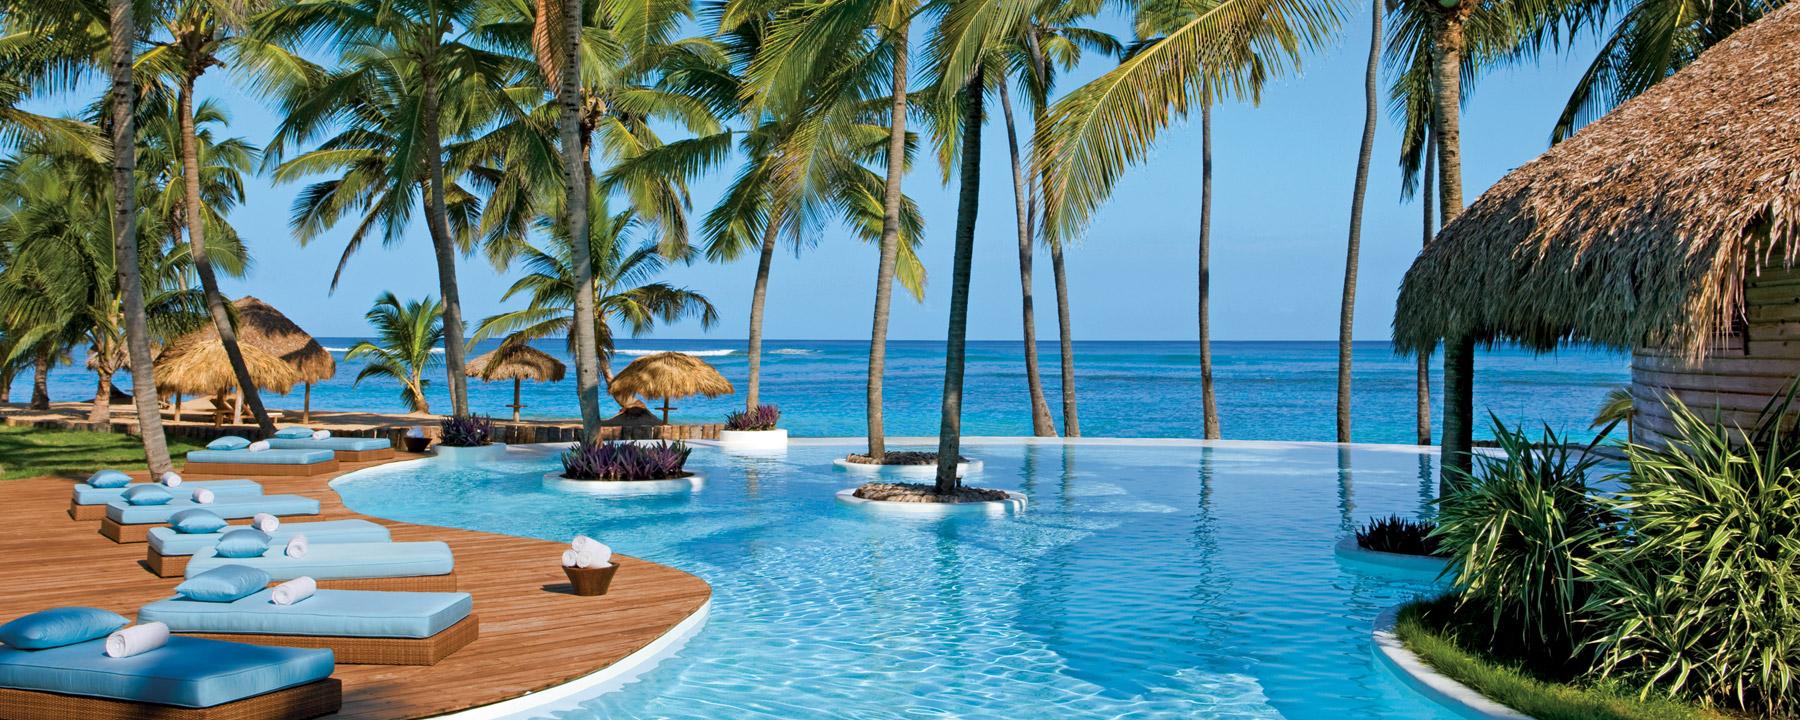 Zoëtry Agua Punta Cana seleccionado entre los 10 mejores hoteles del mundo